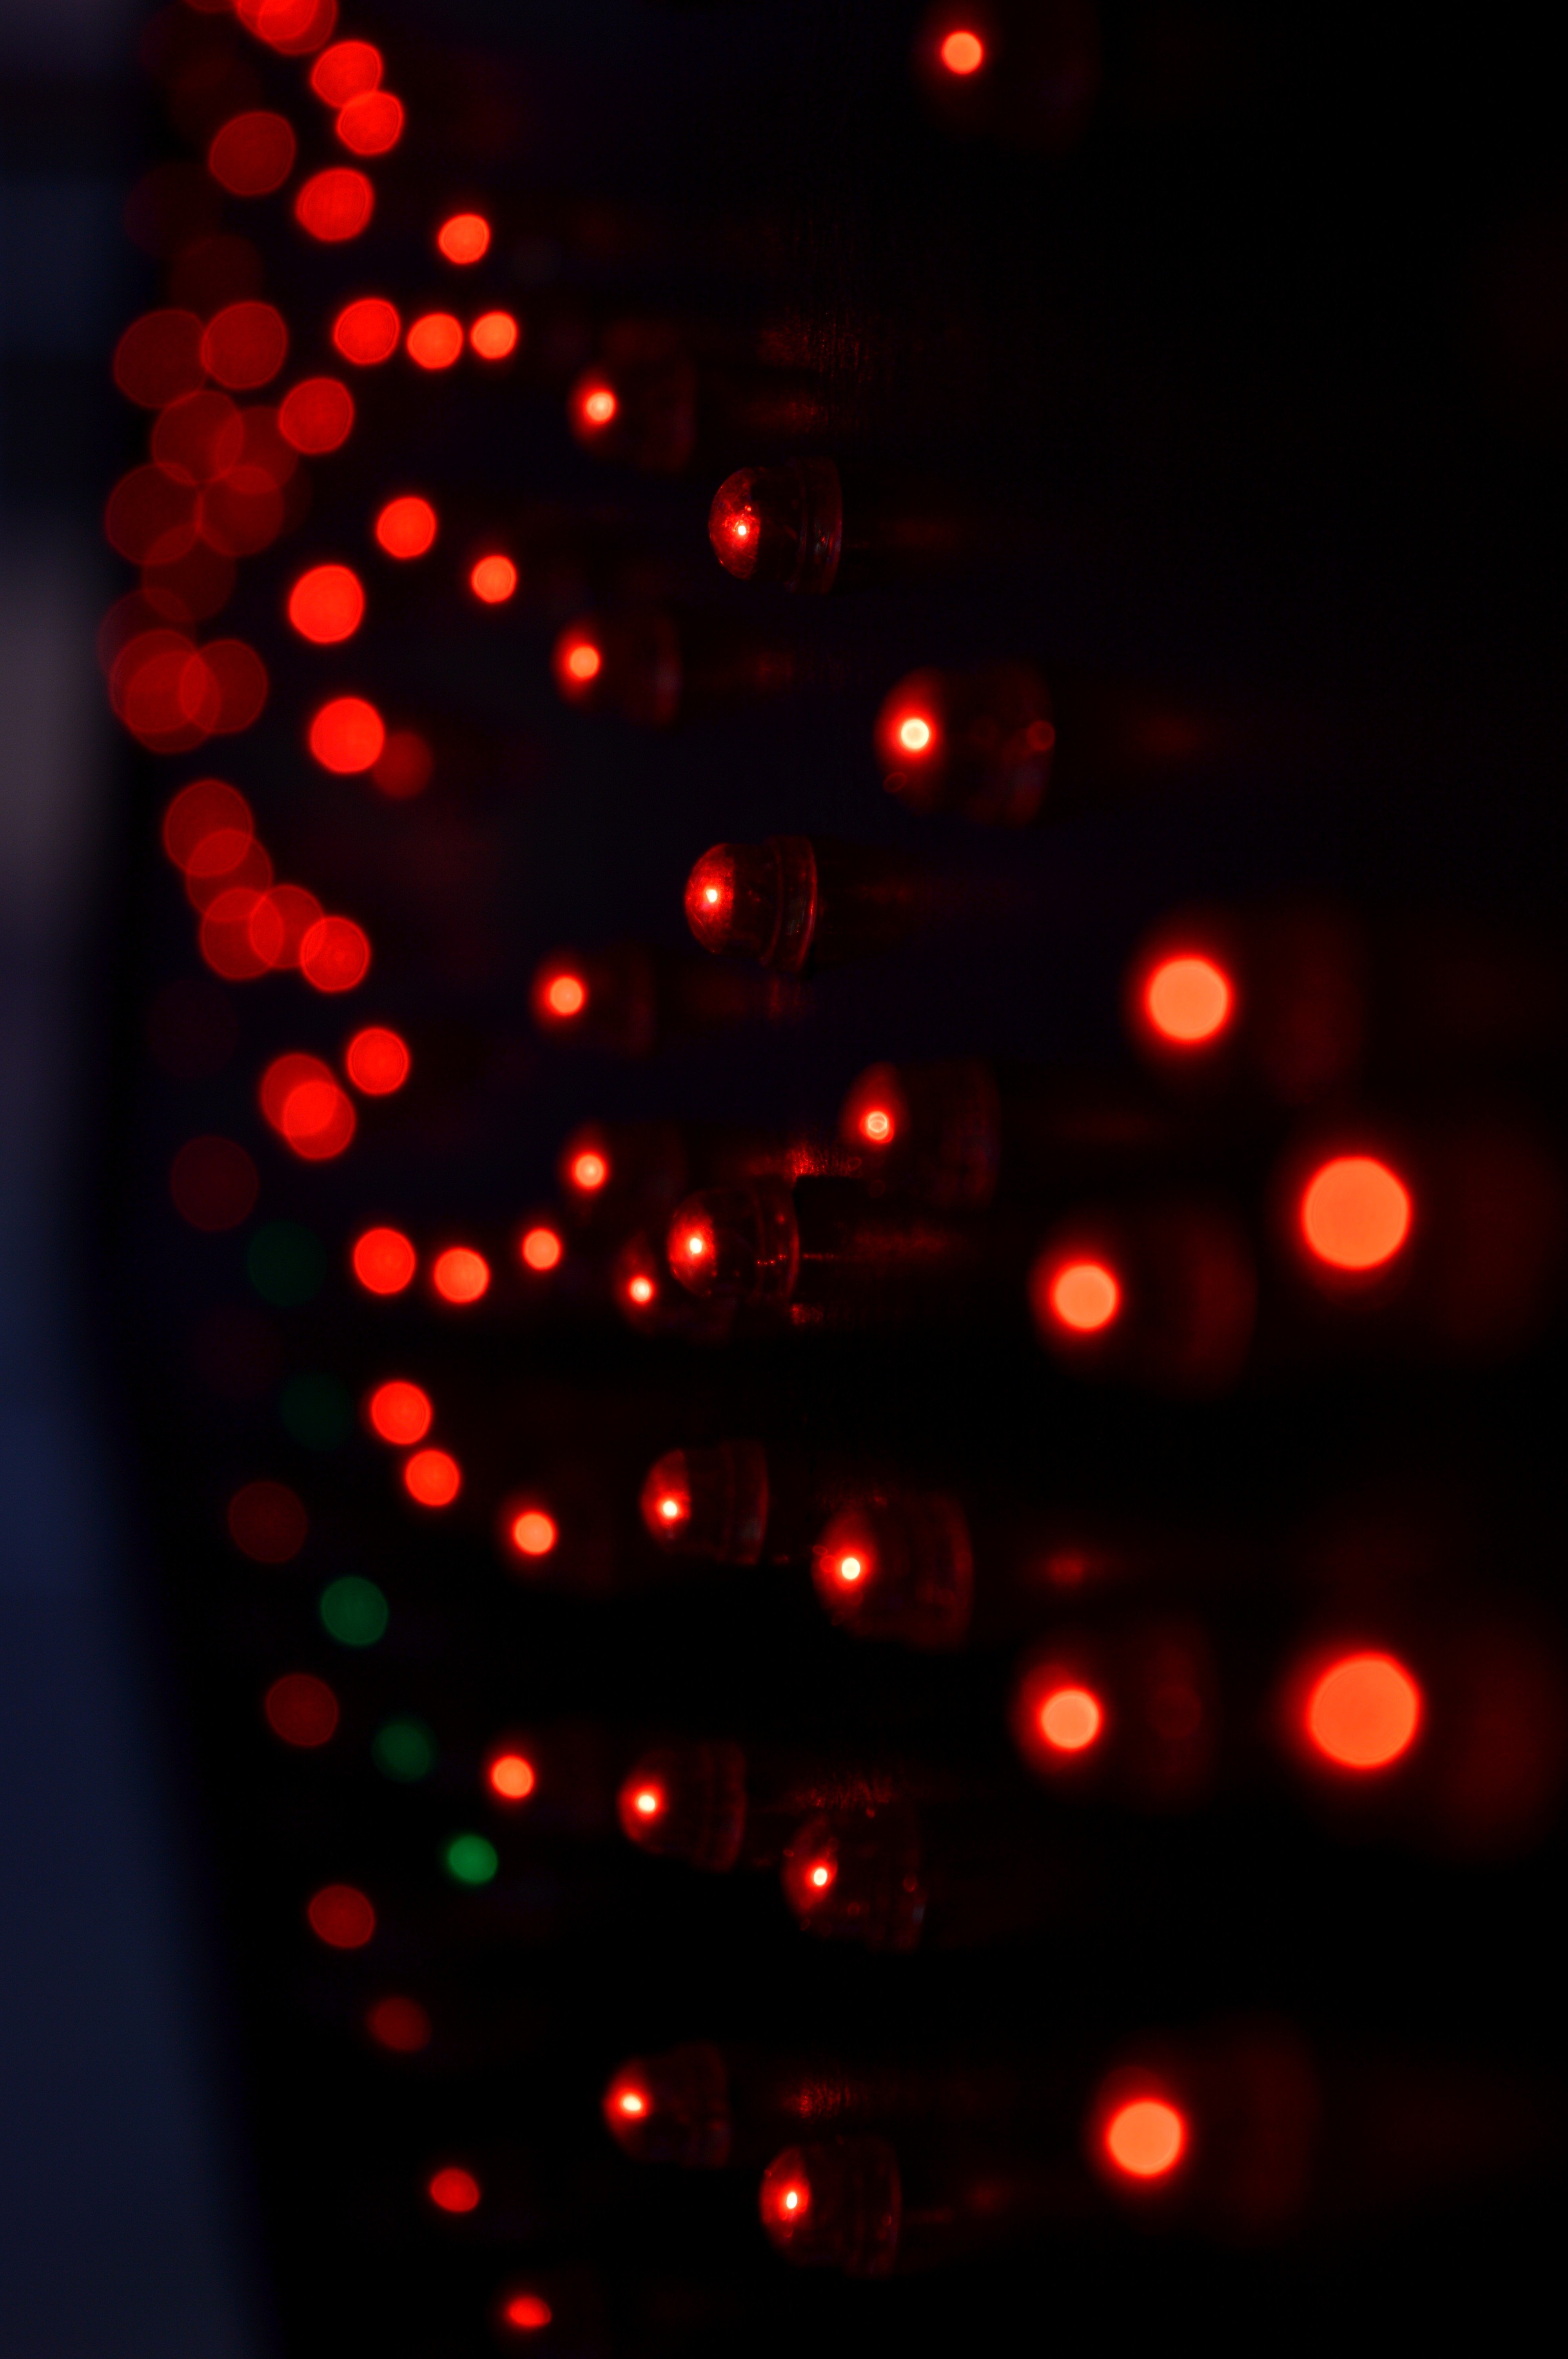 lights, Blurred, Red, Green, LEDs Wallpaper HD / Desktop and Mobile Background